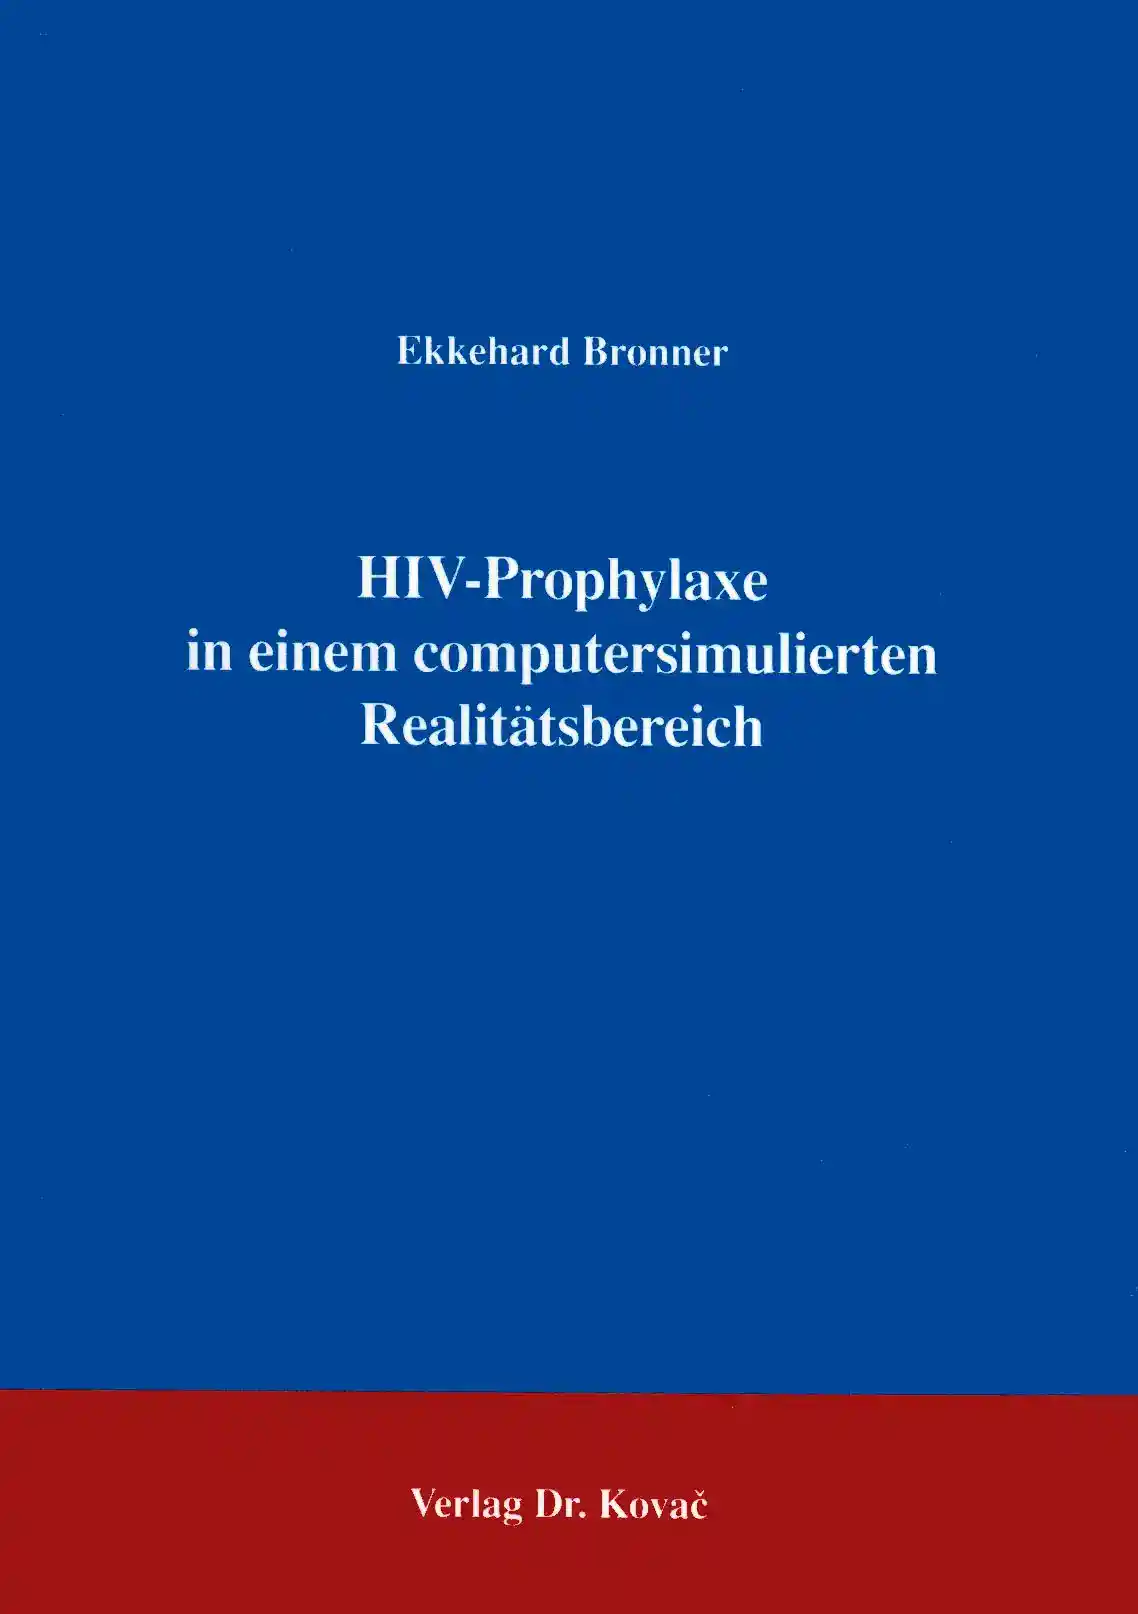 HIV-Prophylaxe in einem computersimulierten Realitätsbereich (Forschungsarbeit)